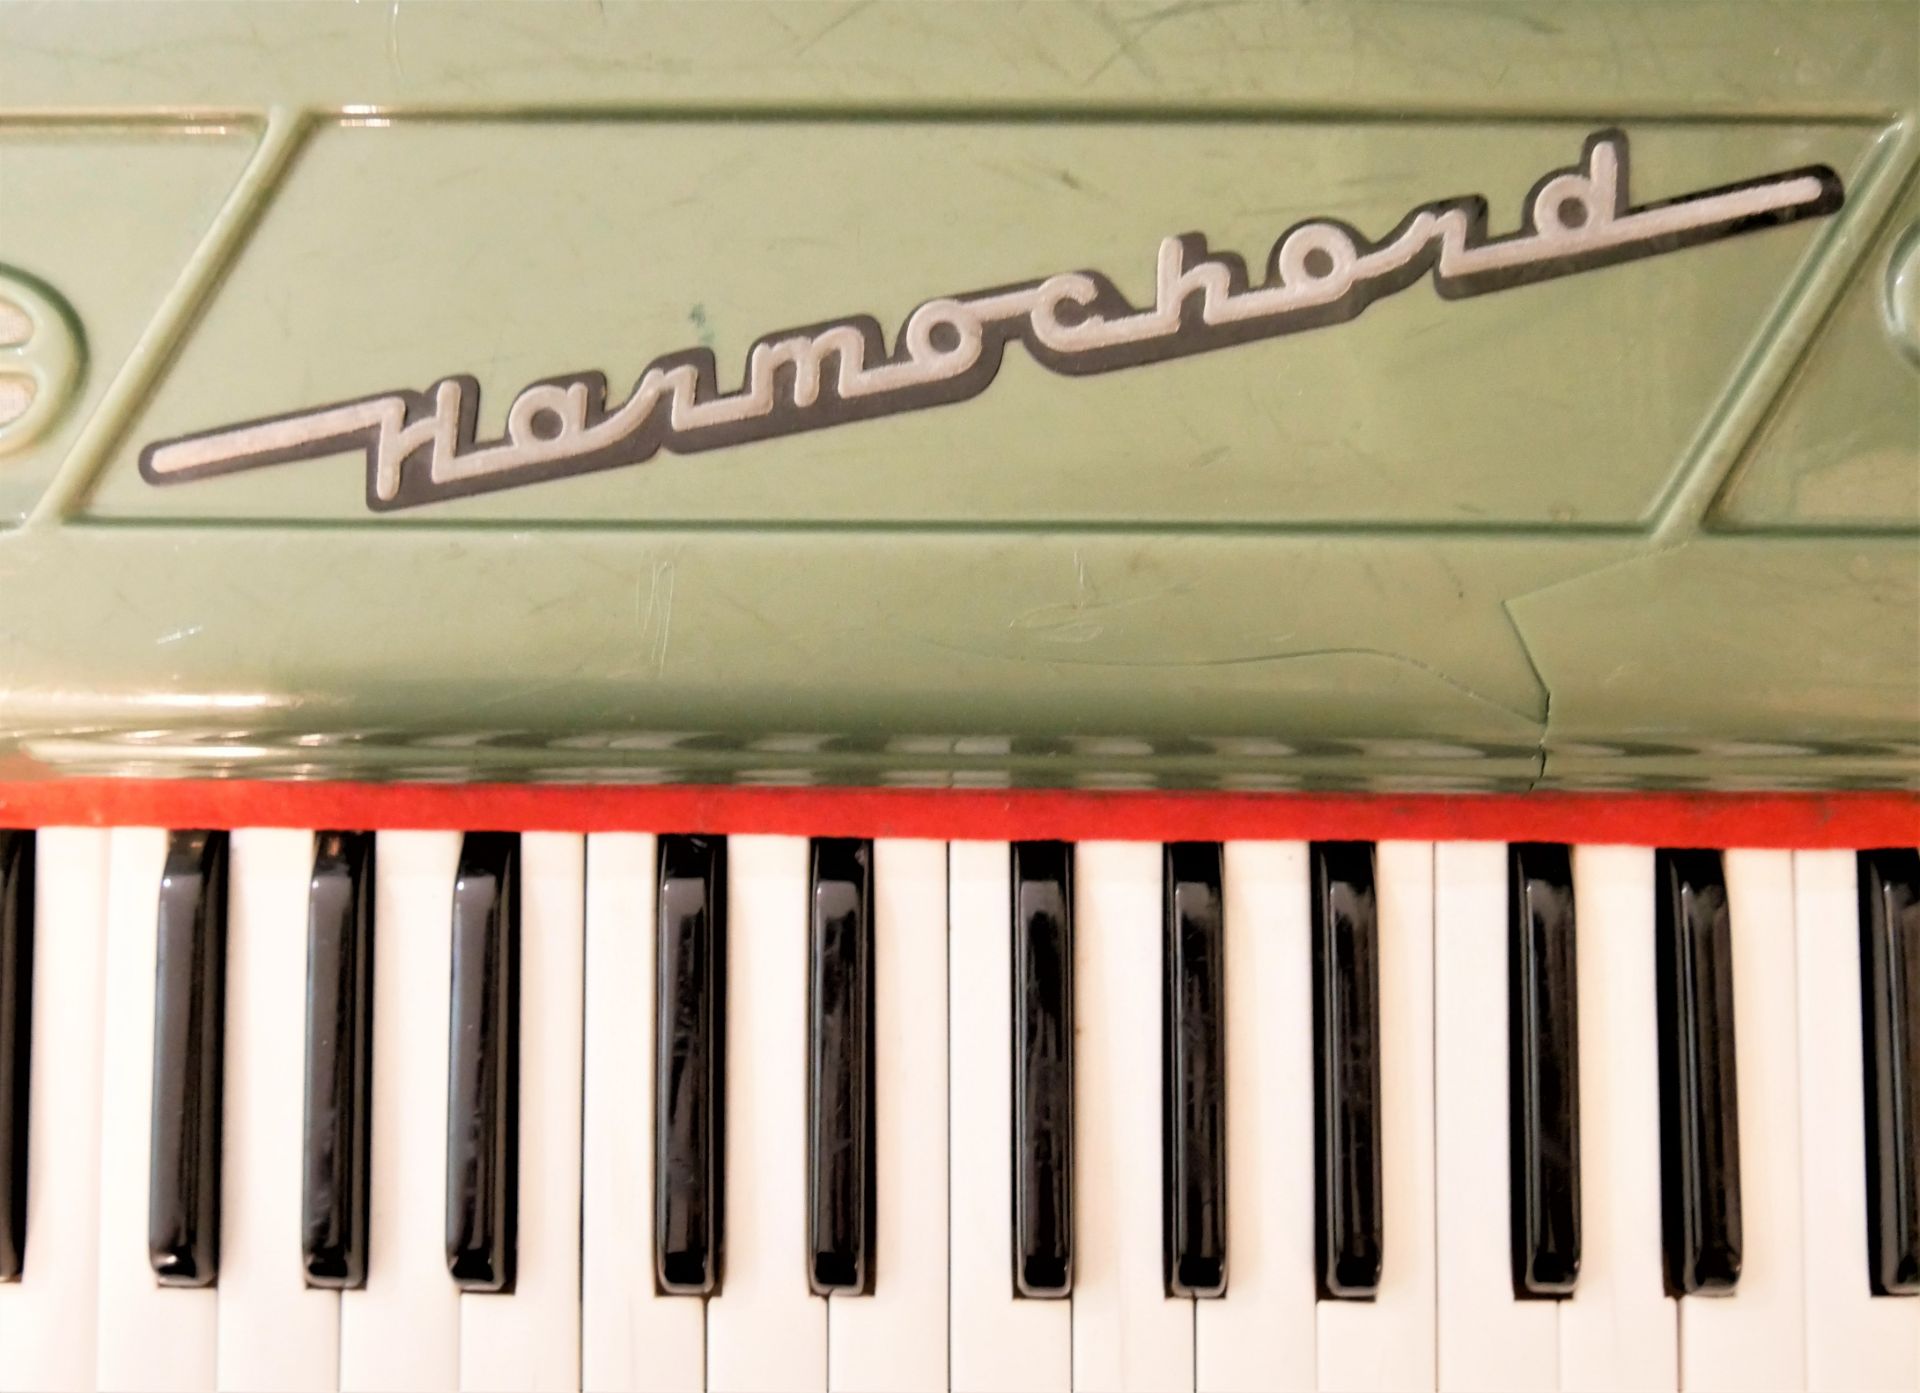 Harmochord im Koffer, Vintage, Funktion nicht geprüft. ca. 50er Jahre. - Bild 2 aus 2